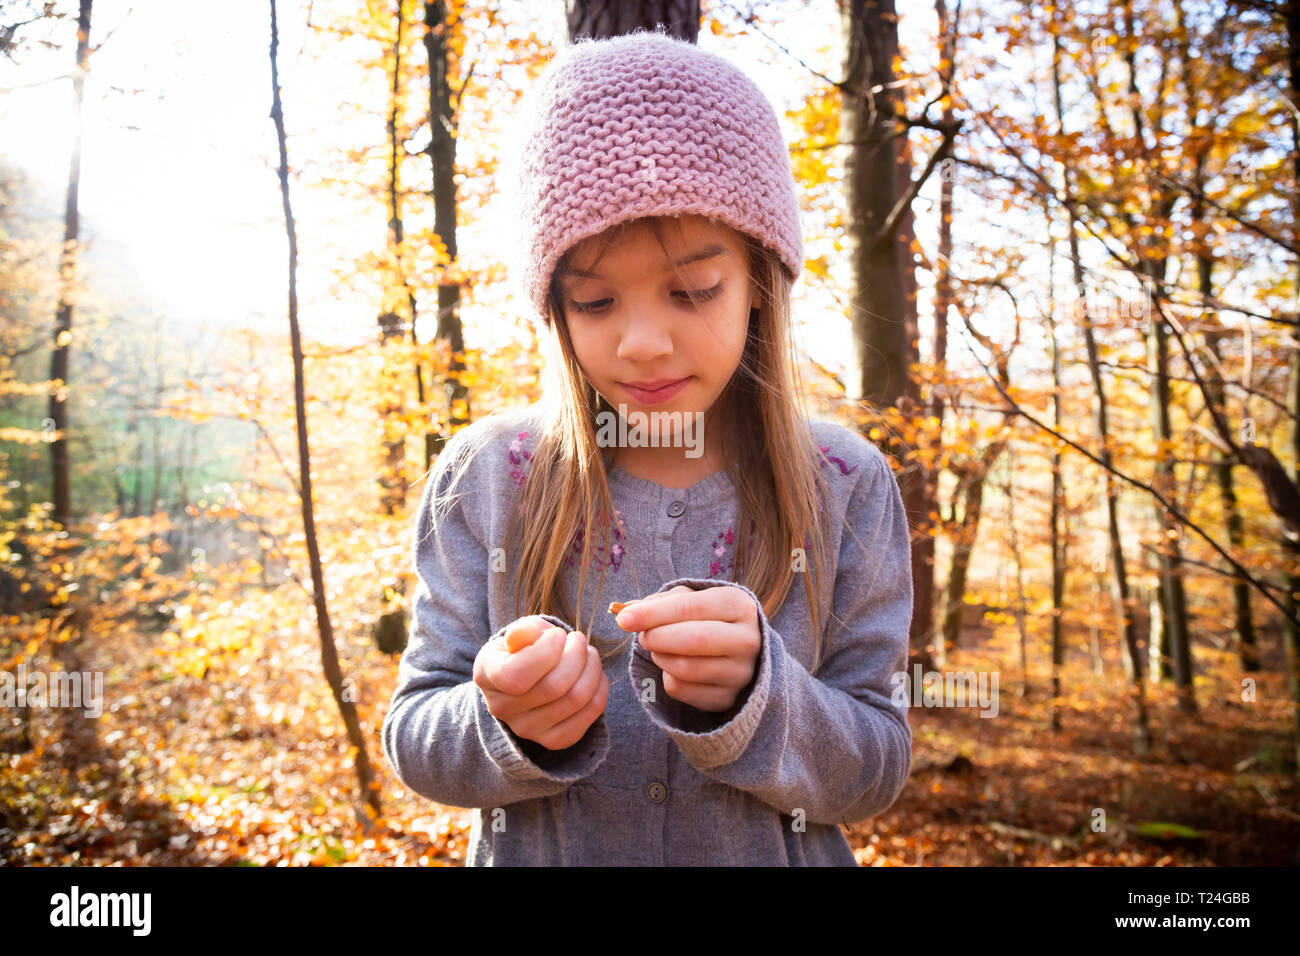 Jeune fille avec des écrous à l'hêtre Forêt d'automne Banque D'Images